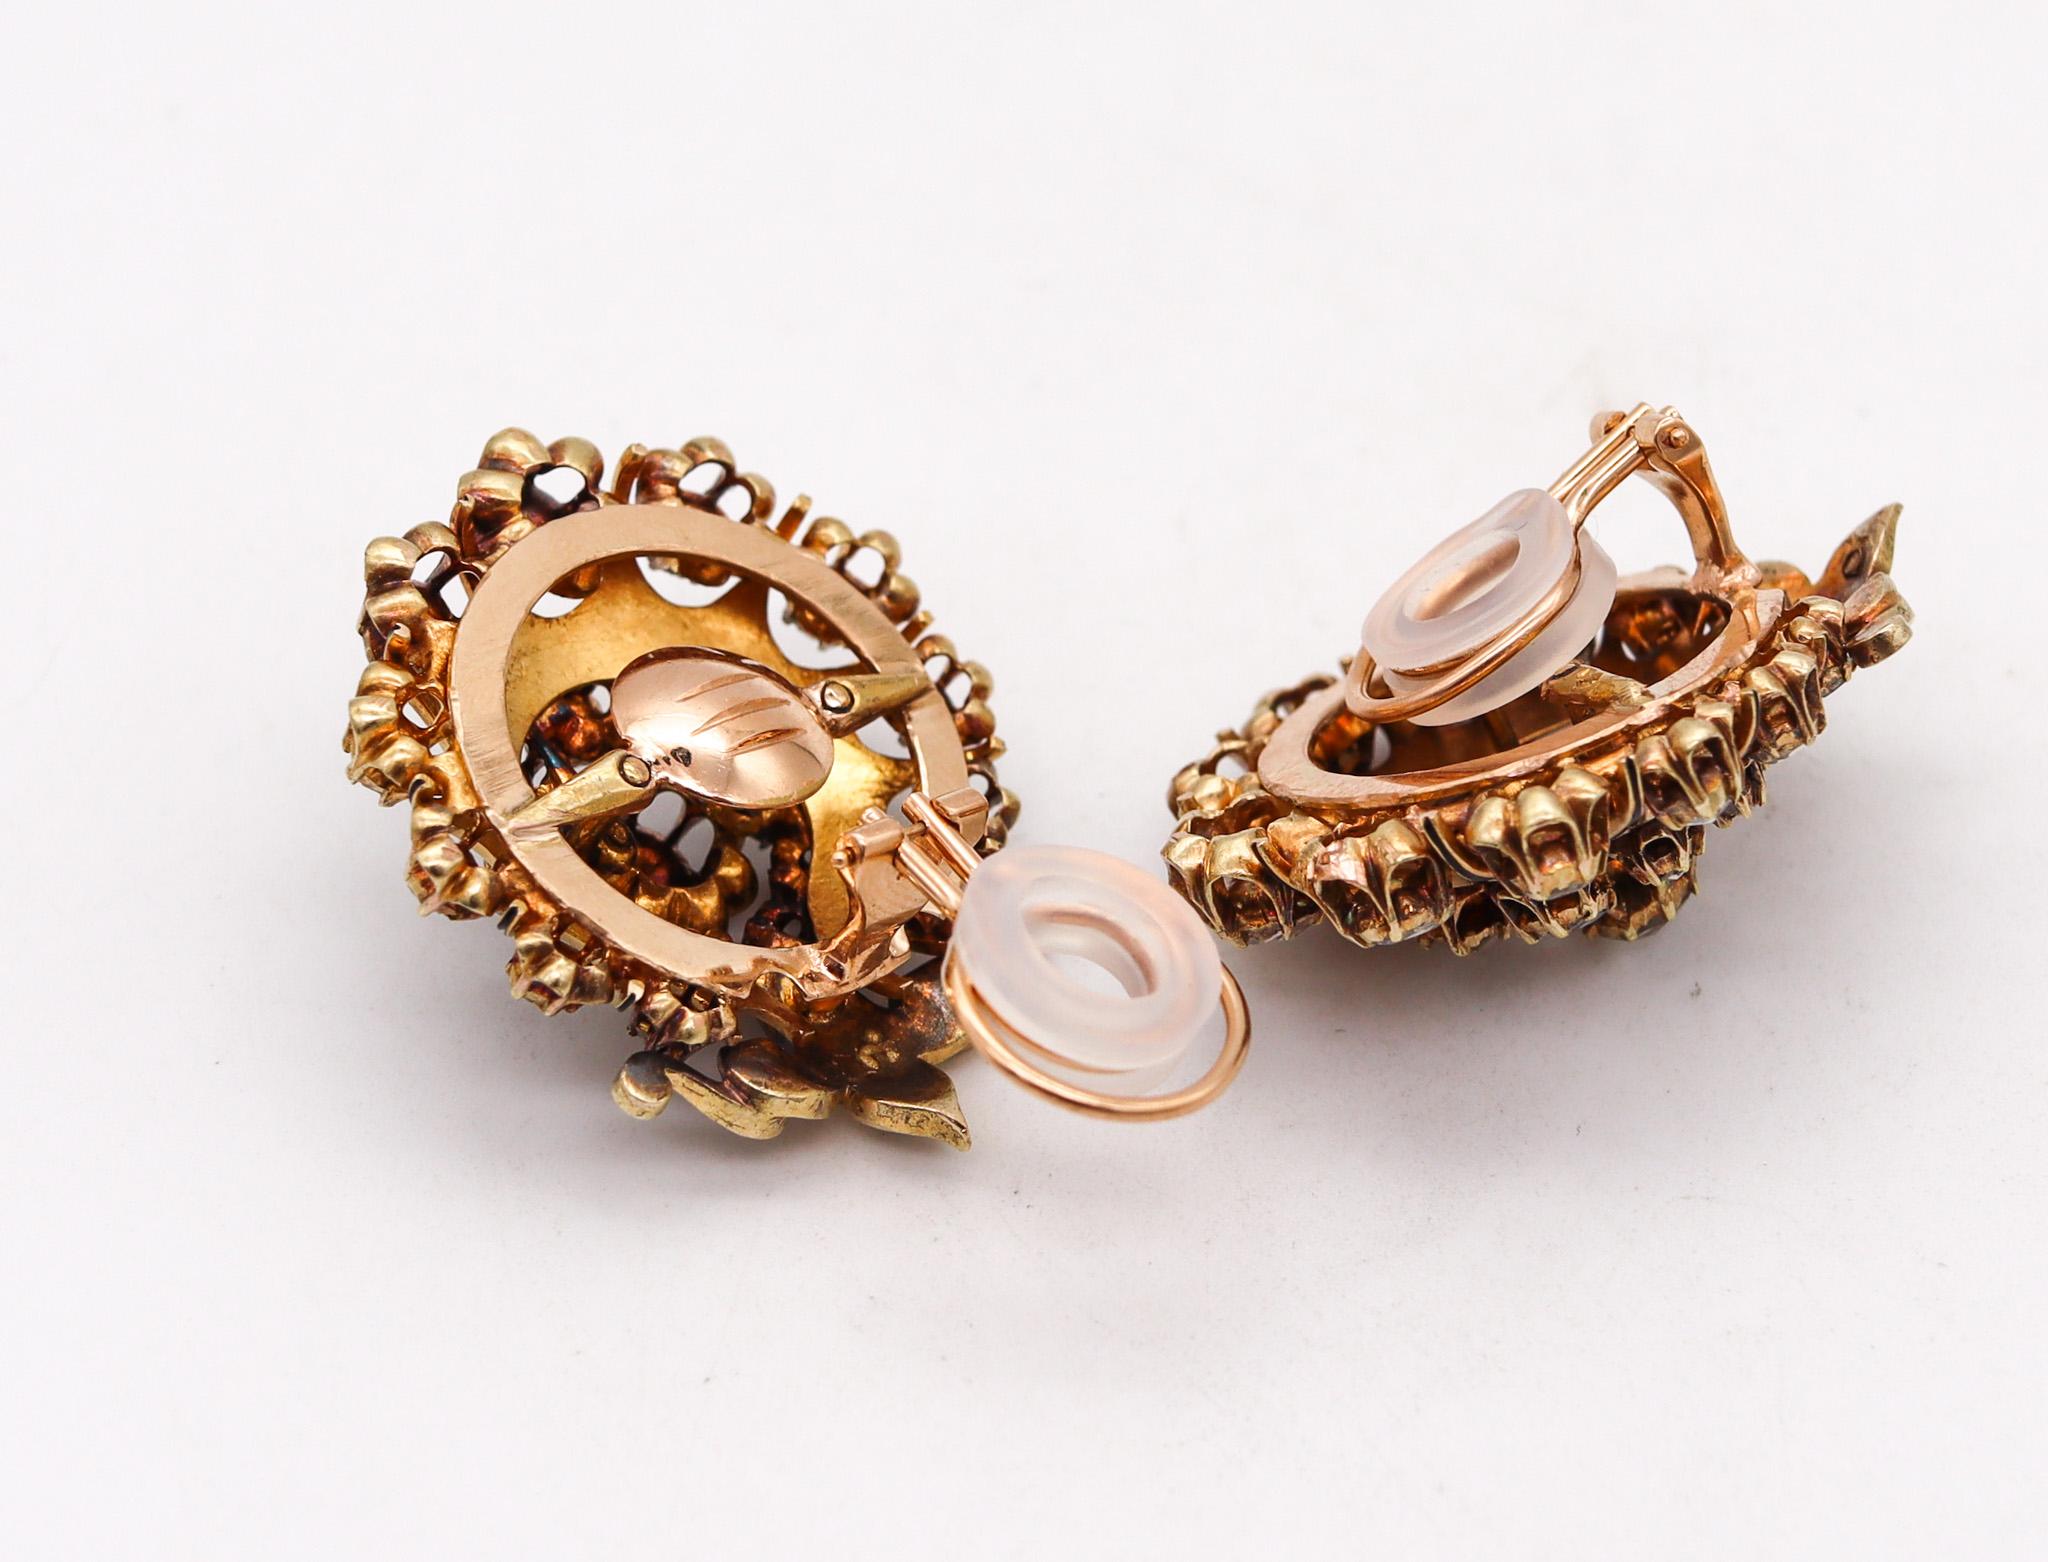 Antike georgische Cluster-Ohrringe.

Außergewöhnliches antikes Paar, entstanden in England während der georgianischen Periode, ca. 1785. Diese Diamanten-Cluster-Ohrringe wurden sorgfältig in massivem Gelbgold von 15 Karat gefertigt und mit